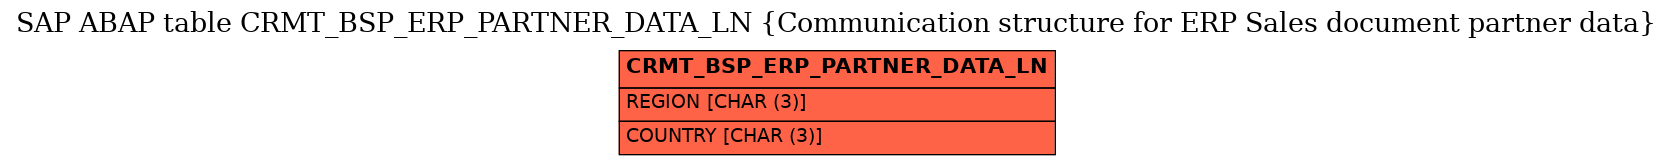 E-R Diagram for table CRMT_BSP_ERP_PARTNER_DATA_LN (Communication structure for ERP Sales document partner data)